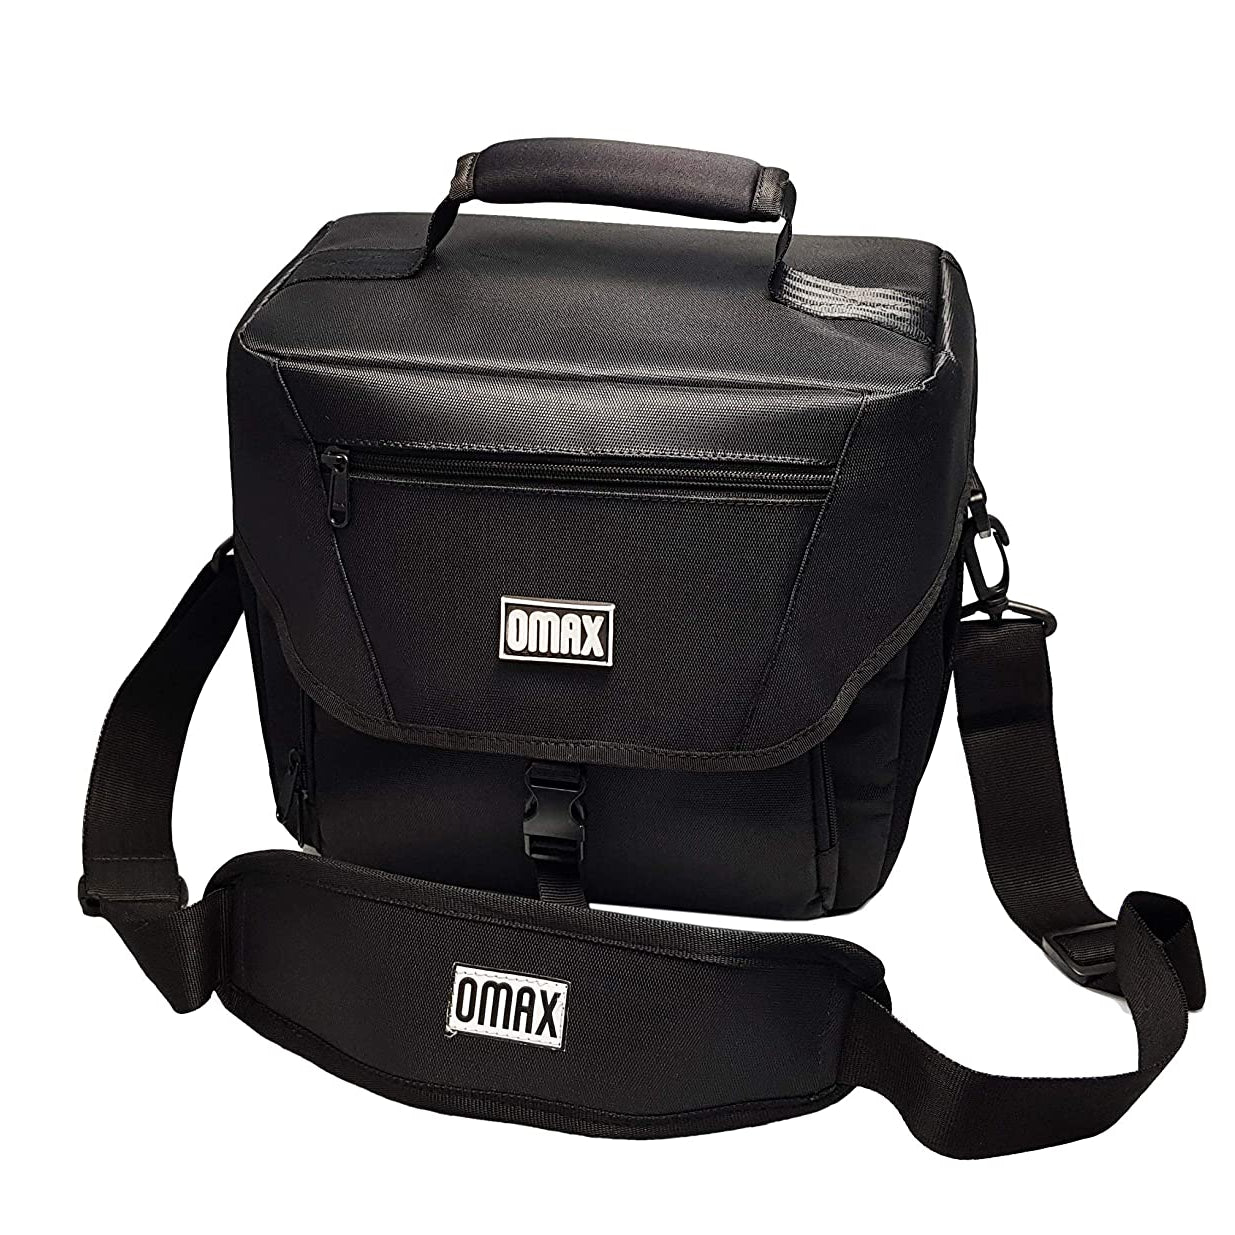 Omax Nova 180 Camera Bag (Black) for dslr professional camera - The Camerashop